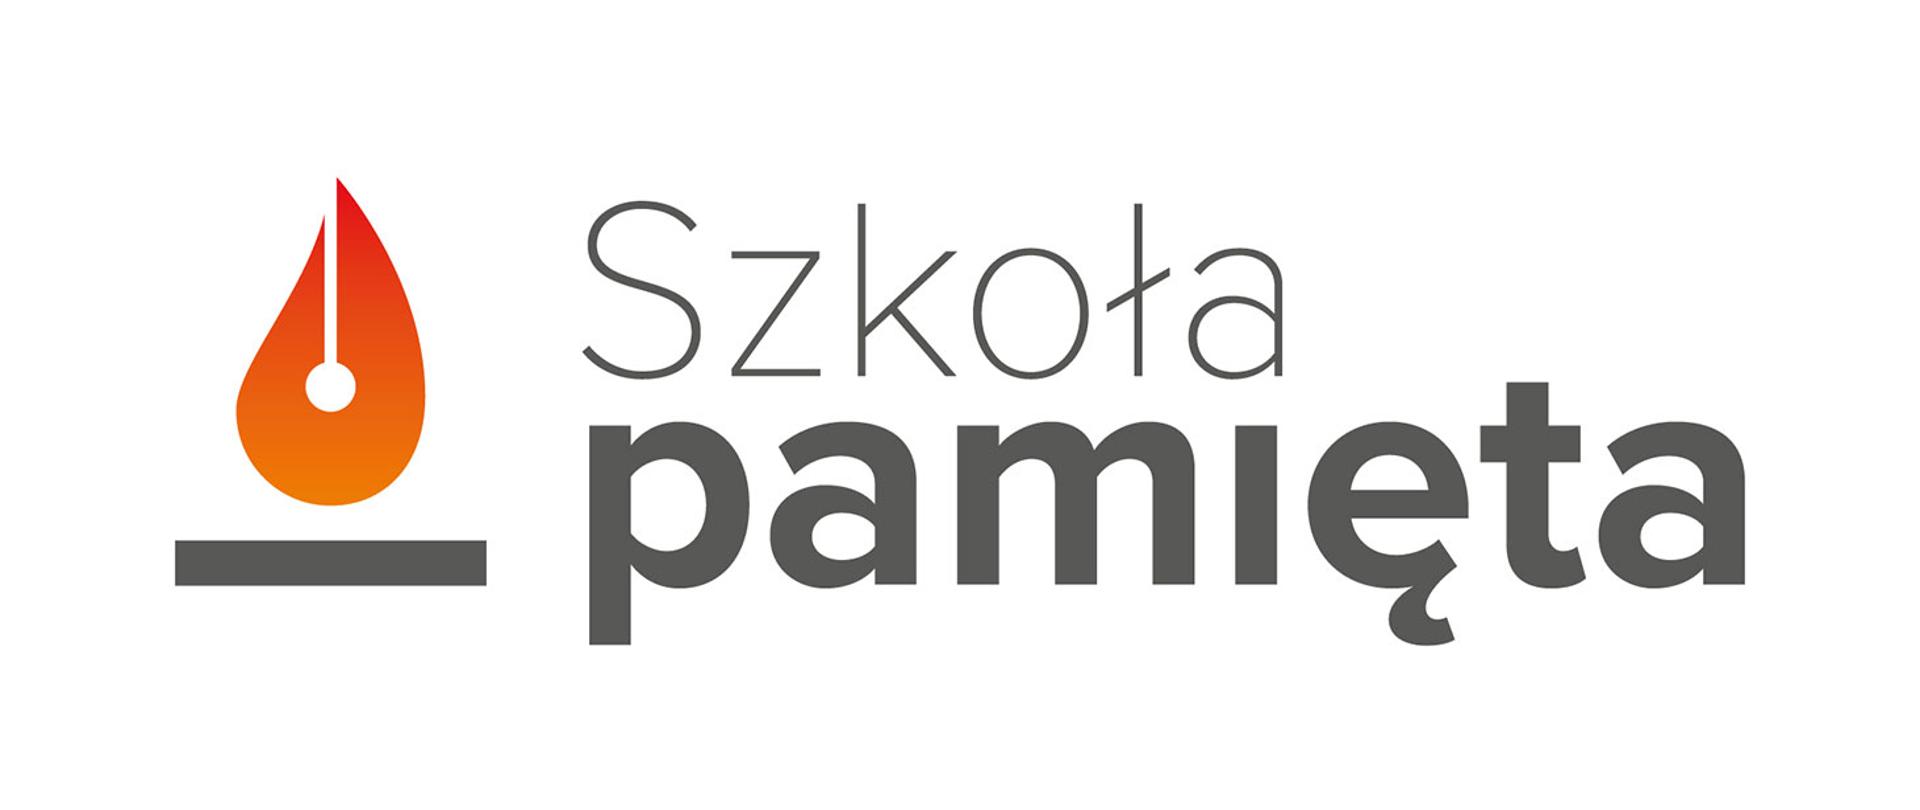 Grafika przedstawiająca logo projektu #Szkoła Pamięta. Z lewej strony graficzne przedstawienie płomyka świecy, z prawej napis "Szkoła pamięta"